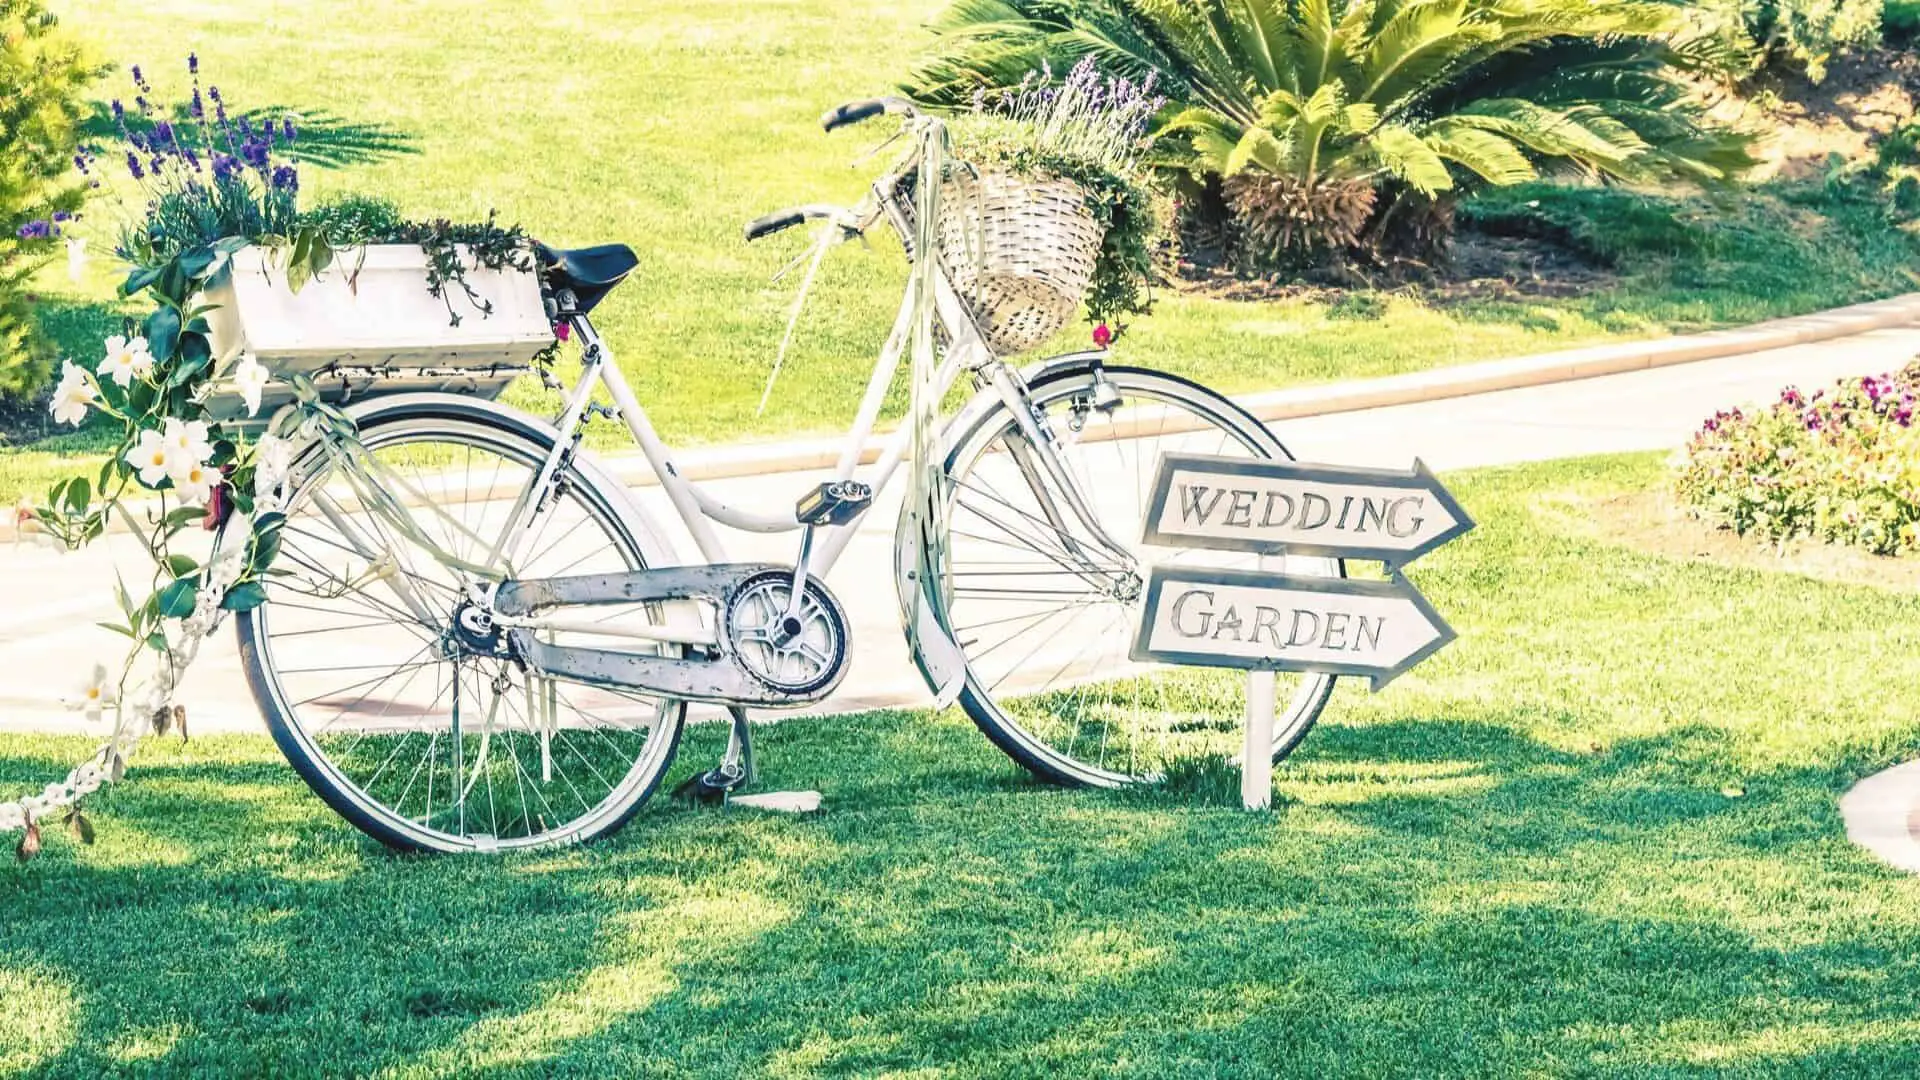 Festival-wedding-met-fiets